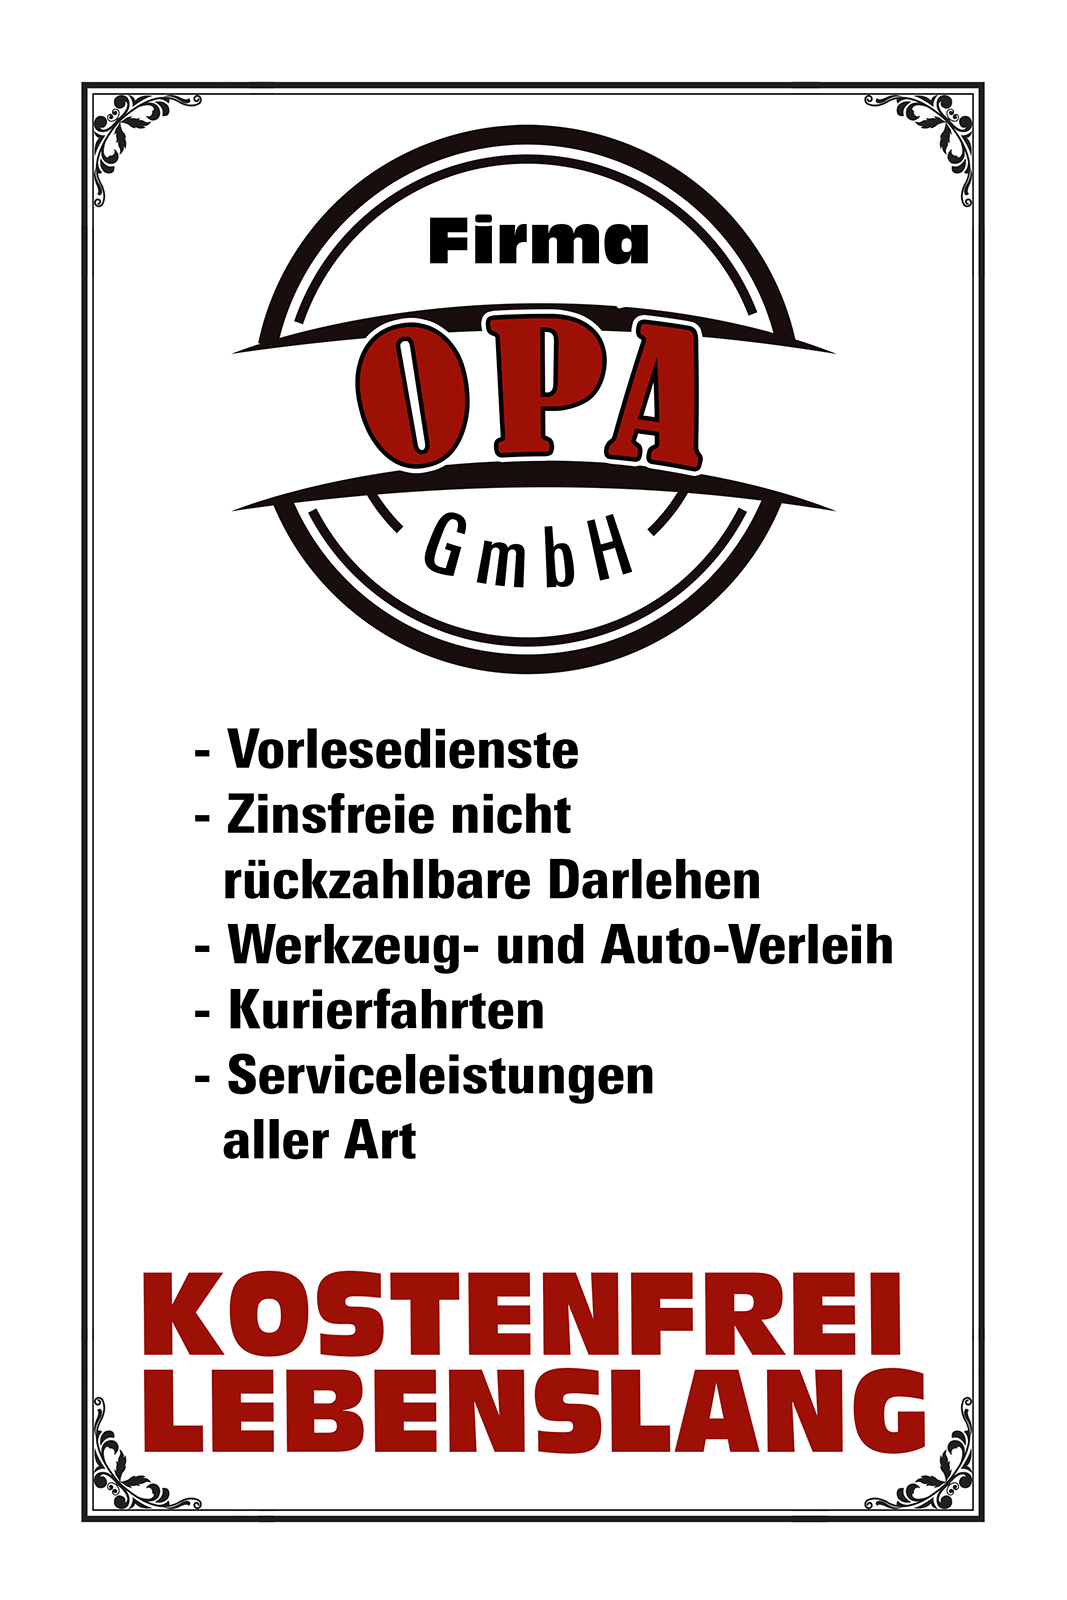 3265 Firma Opa GmbH Werbeschild Art Blechschild 17 x 22 